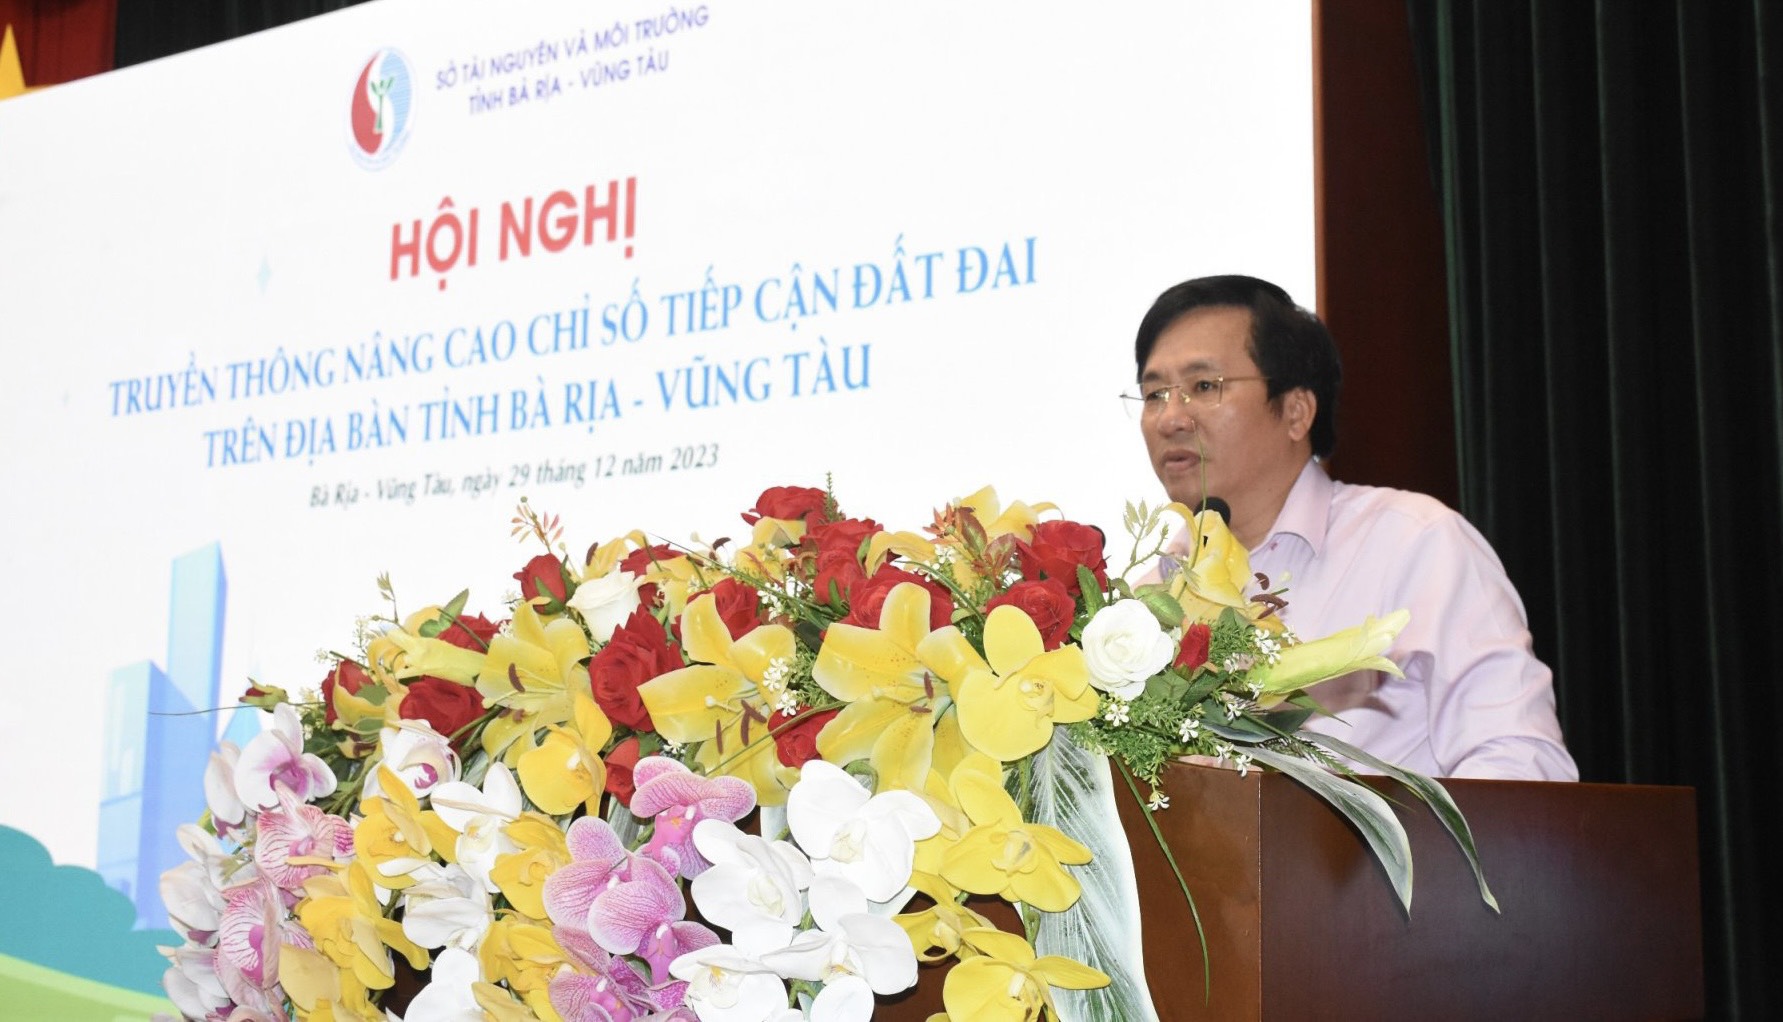 Tiến sĩ Trà Ngọc Phong, Phó Phòng quản lý đất đai Sở TN-MT trình bày các giải pháp nâng cao chỉ số TCĐ Đ